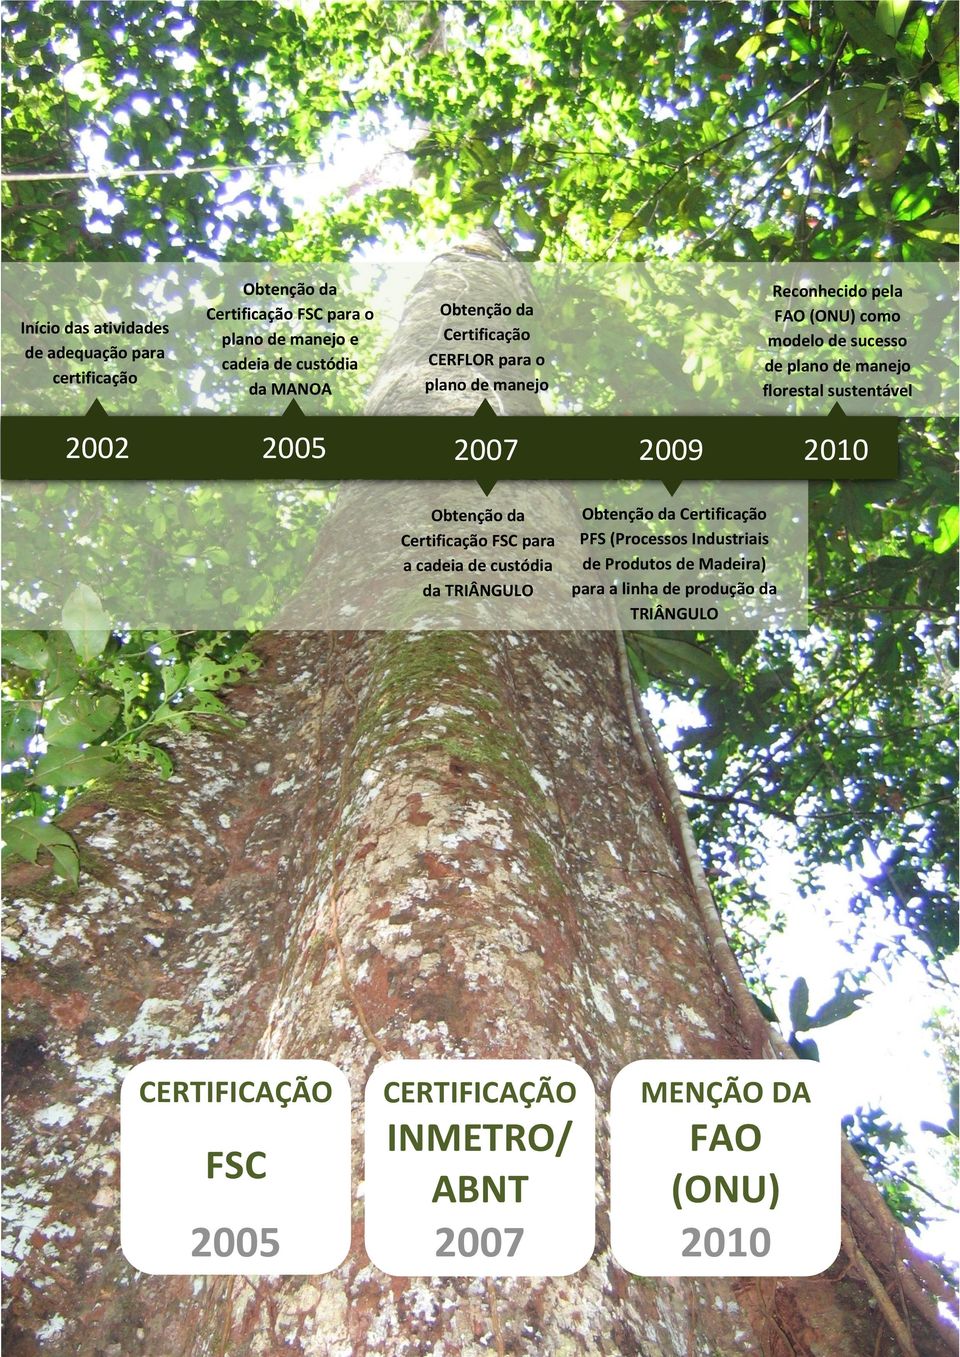 florestal sustentável 2009 2010 Obtenção da Certificação Obtenção da Certificação FSC para PFS (Processos Industriais de Produtos de Madeira)